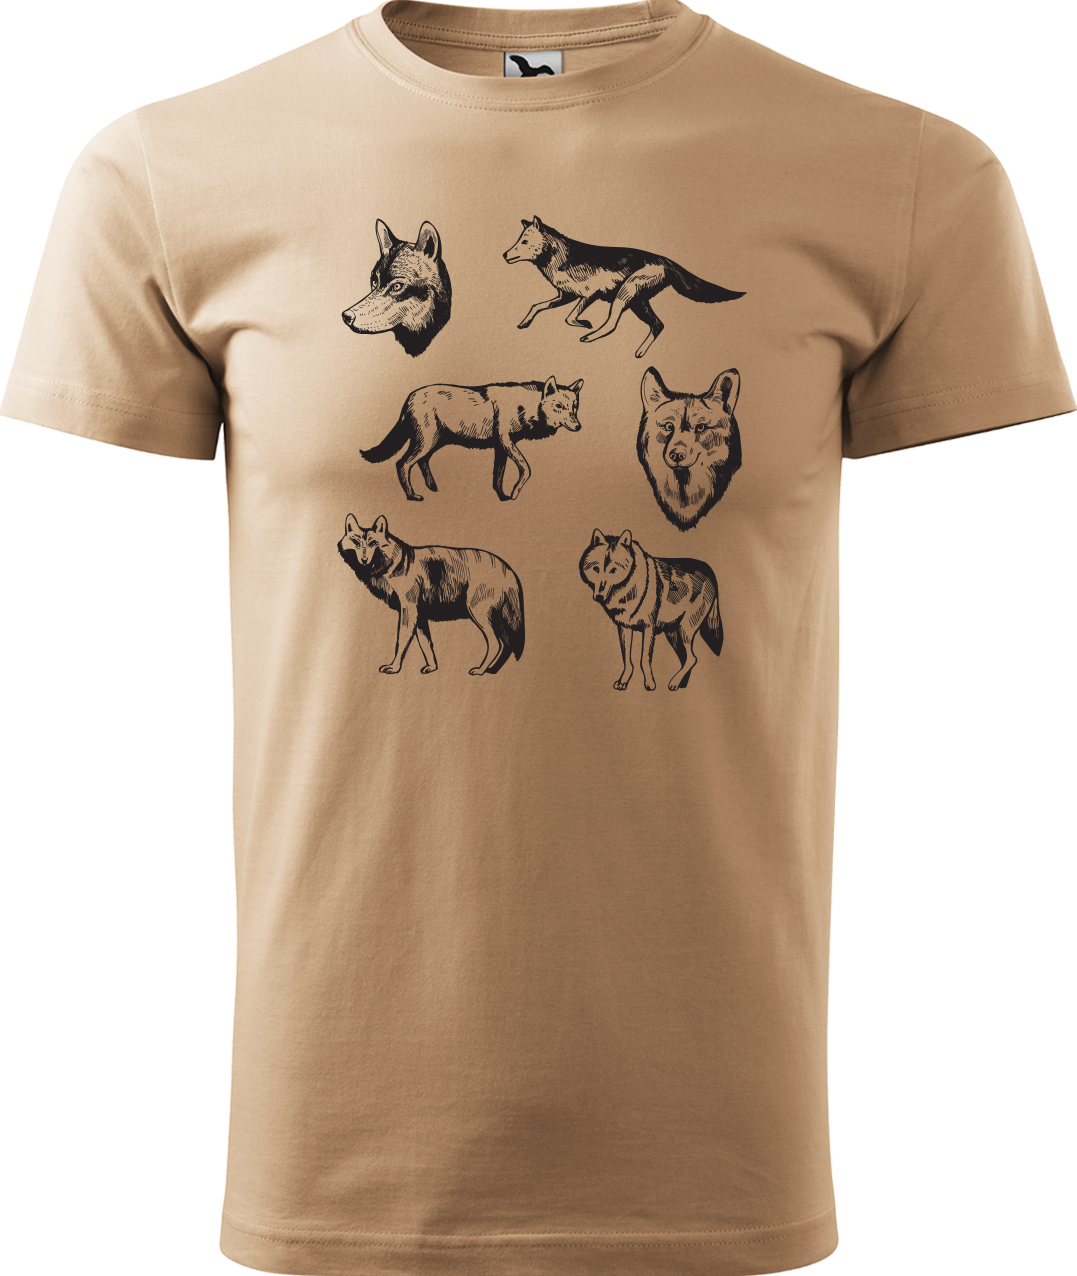 Pánské tričko s vlkem - Vlci Velikost: XL, Barva: Písková (08), Střih: pánský